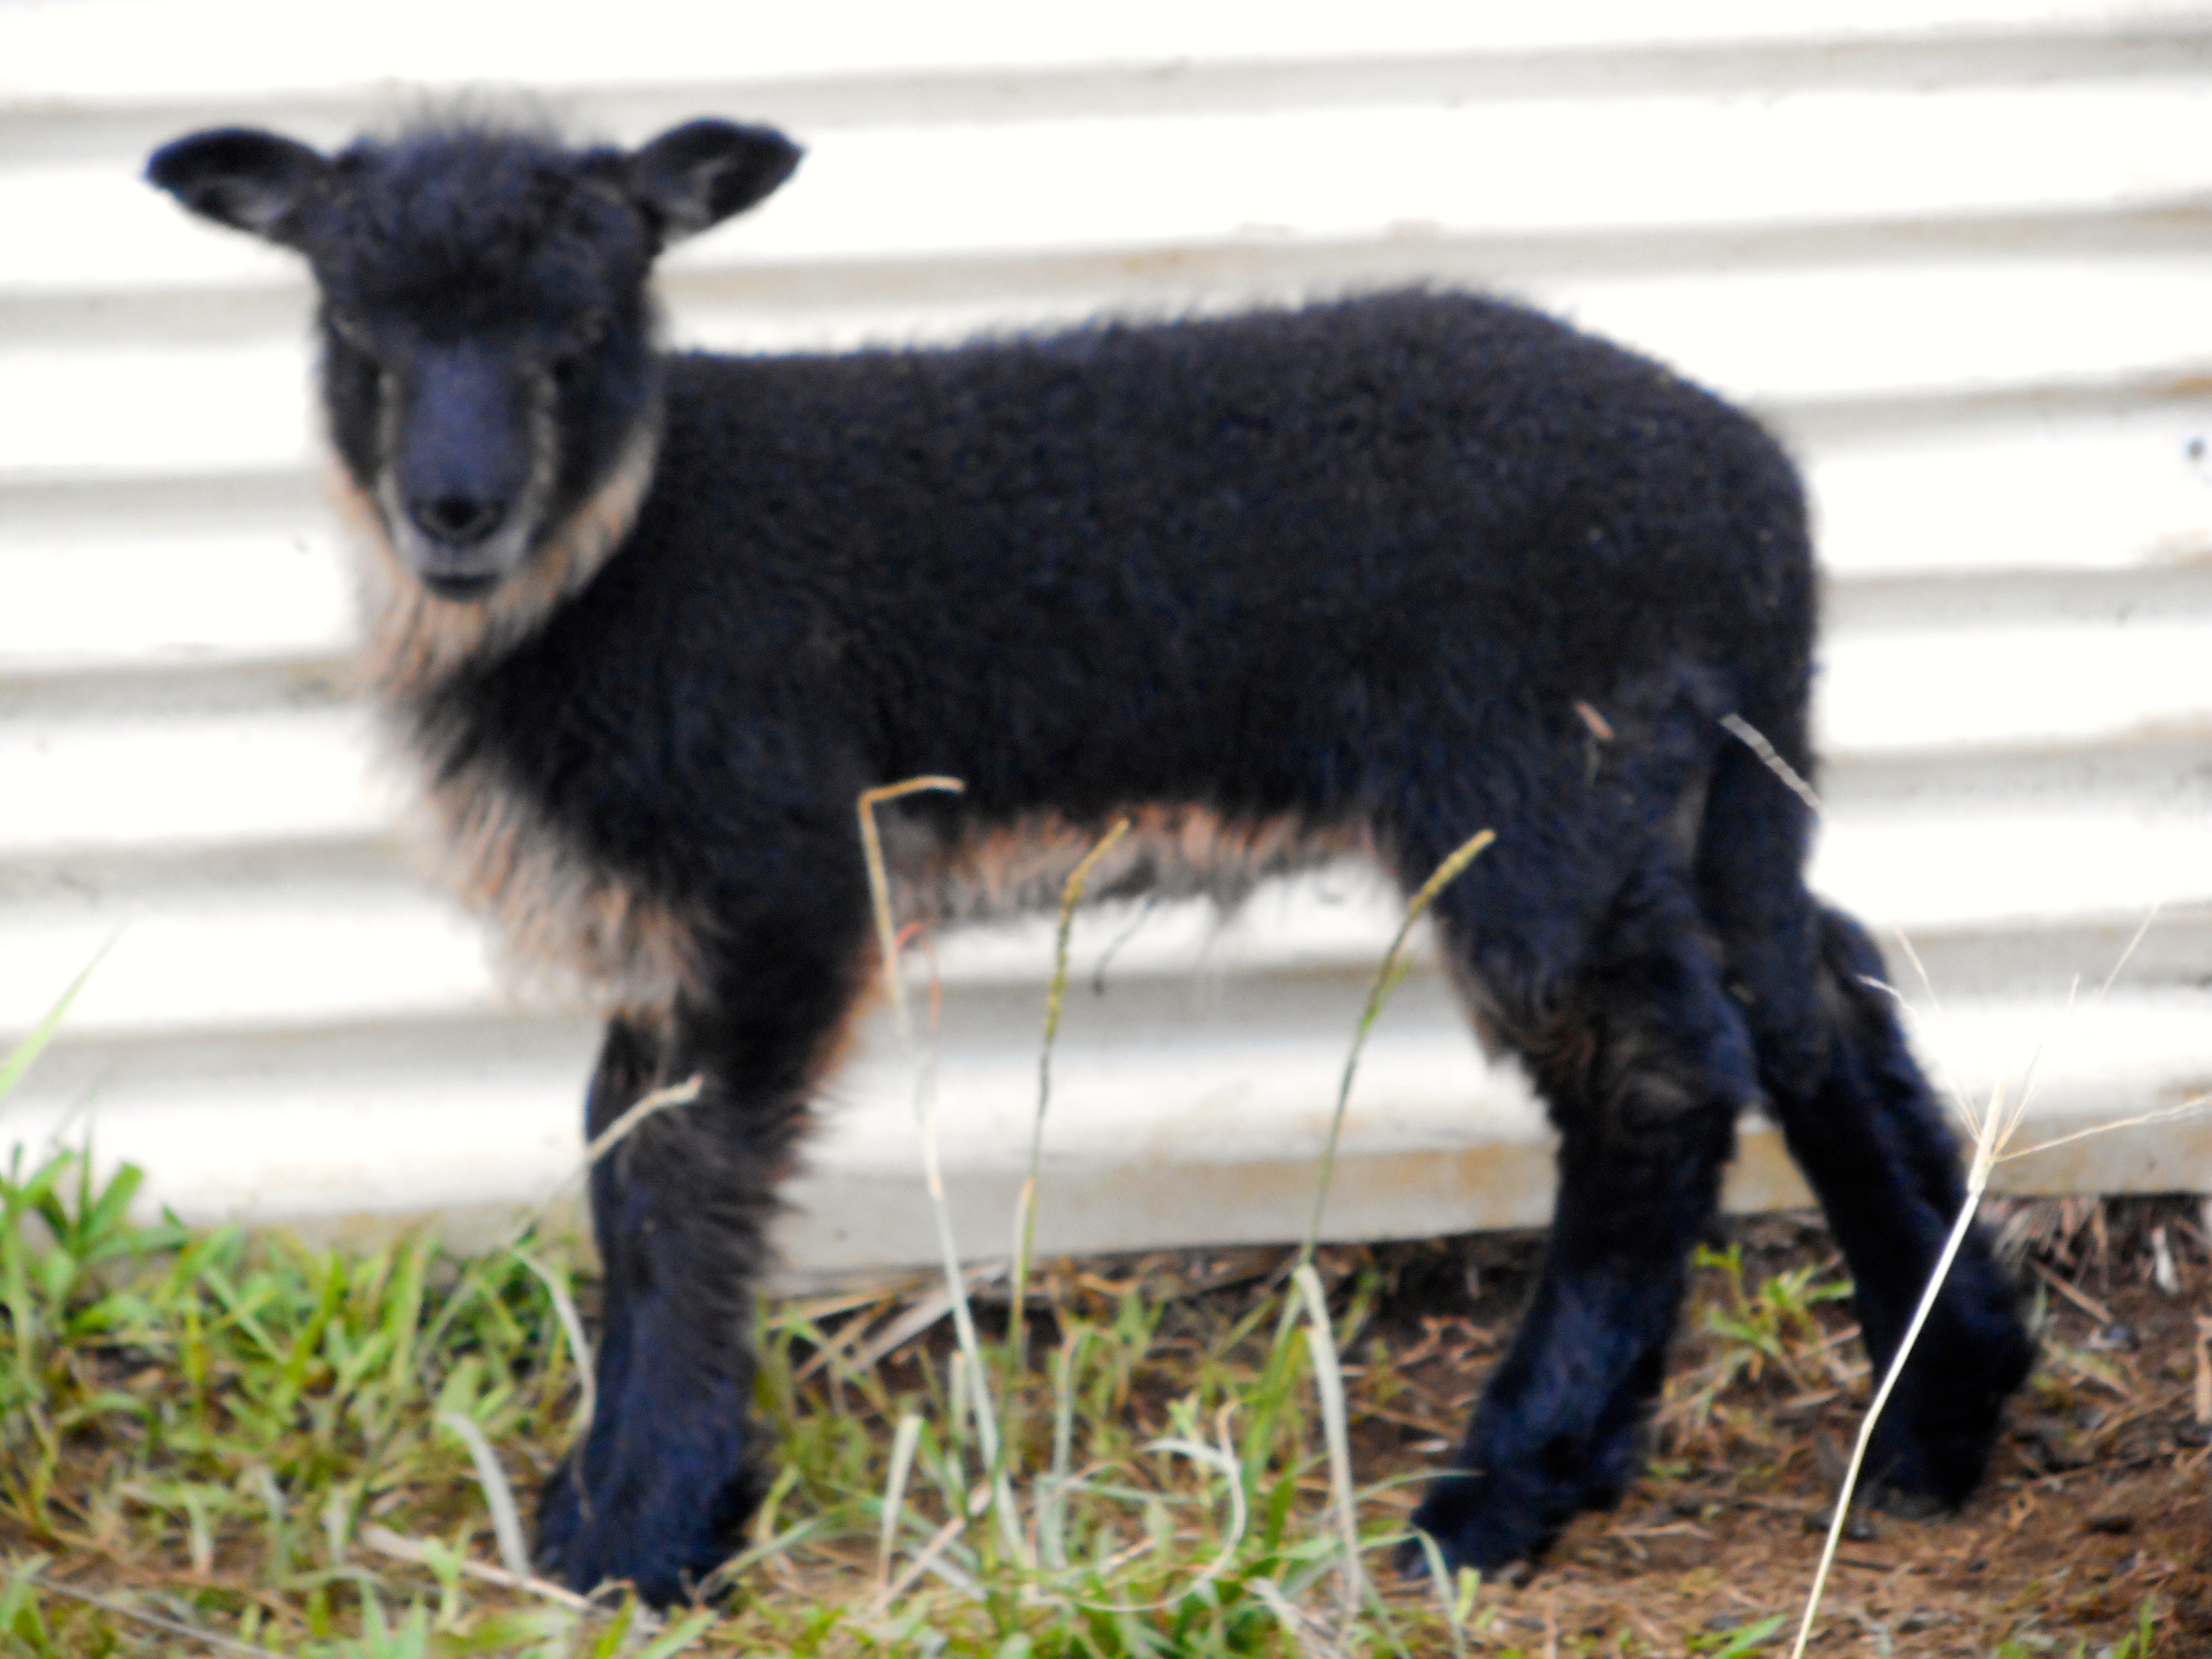 Easter's ram lamb